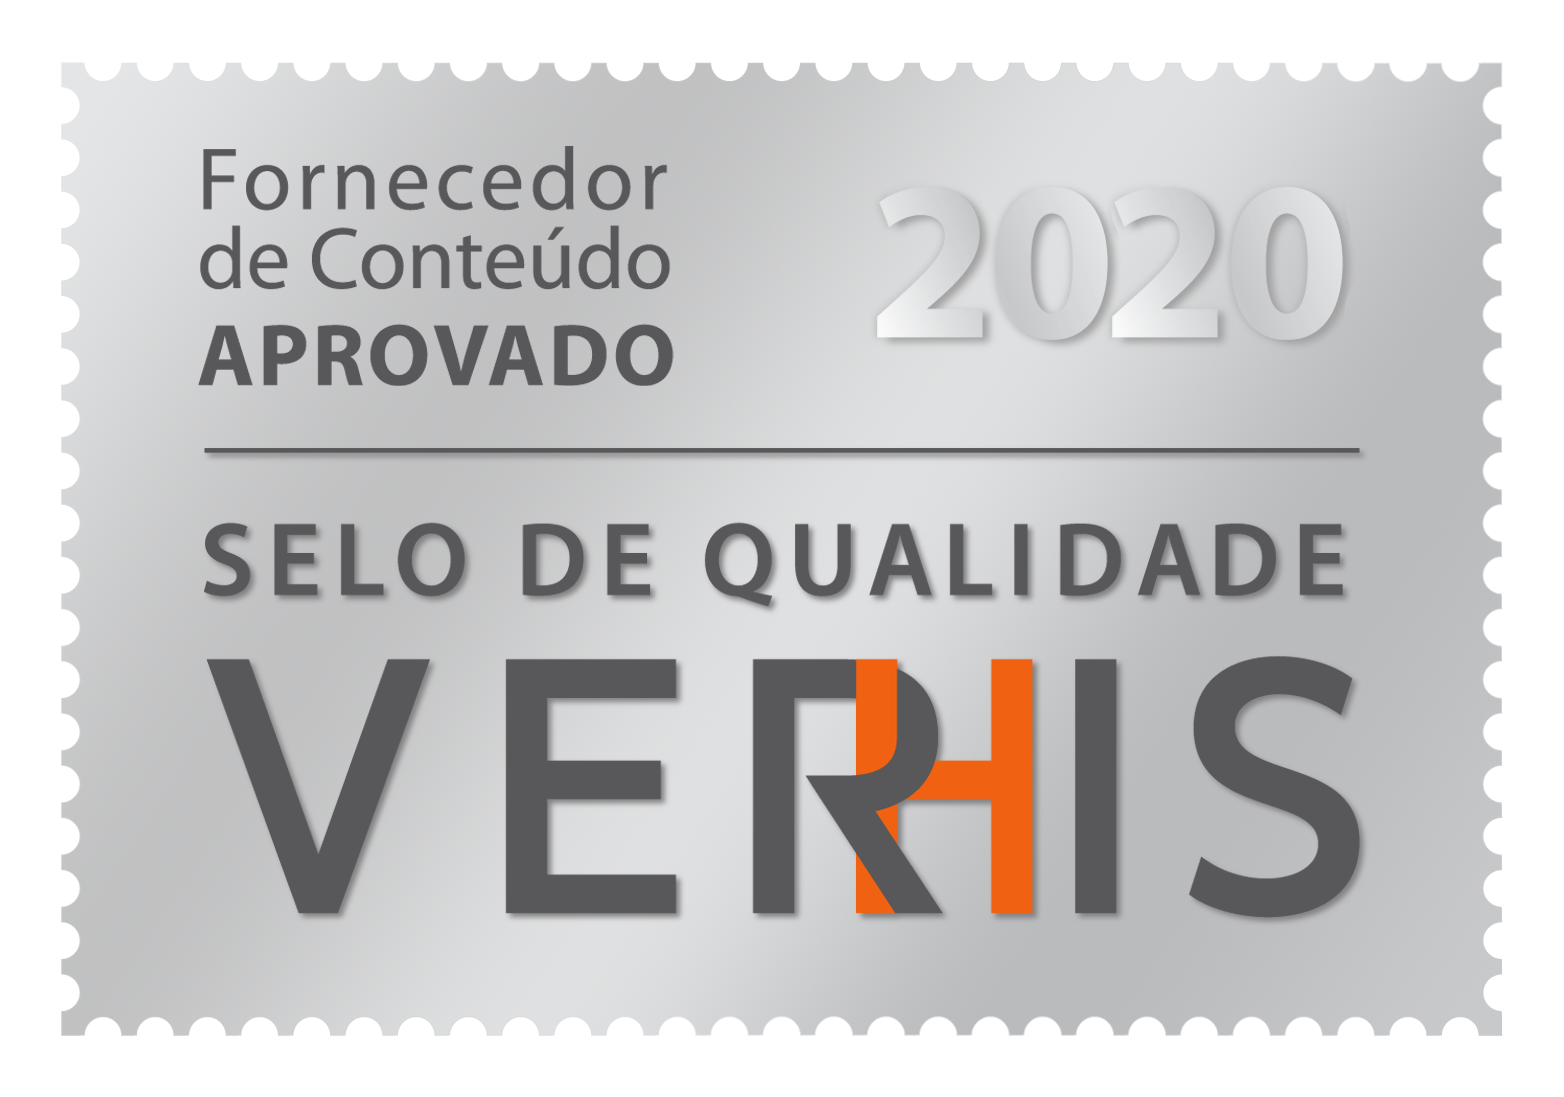 Fornecedor de conteúdo aprovado VERHIS 2020